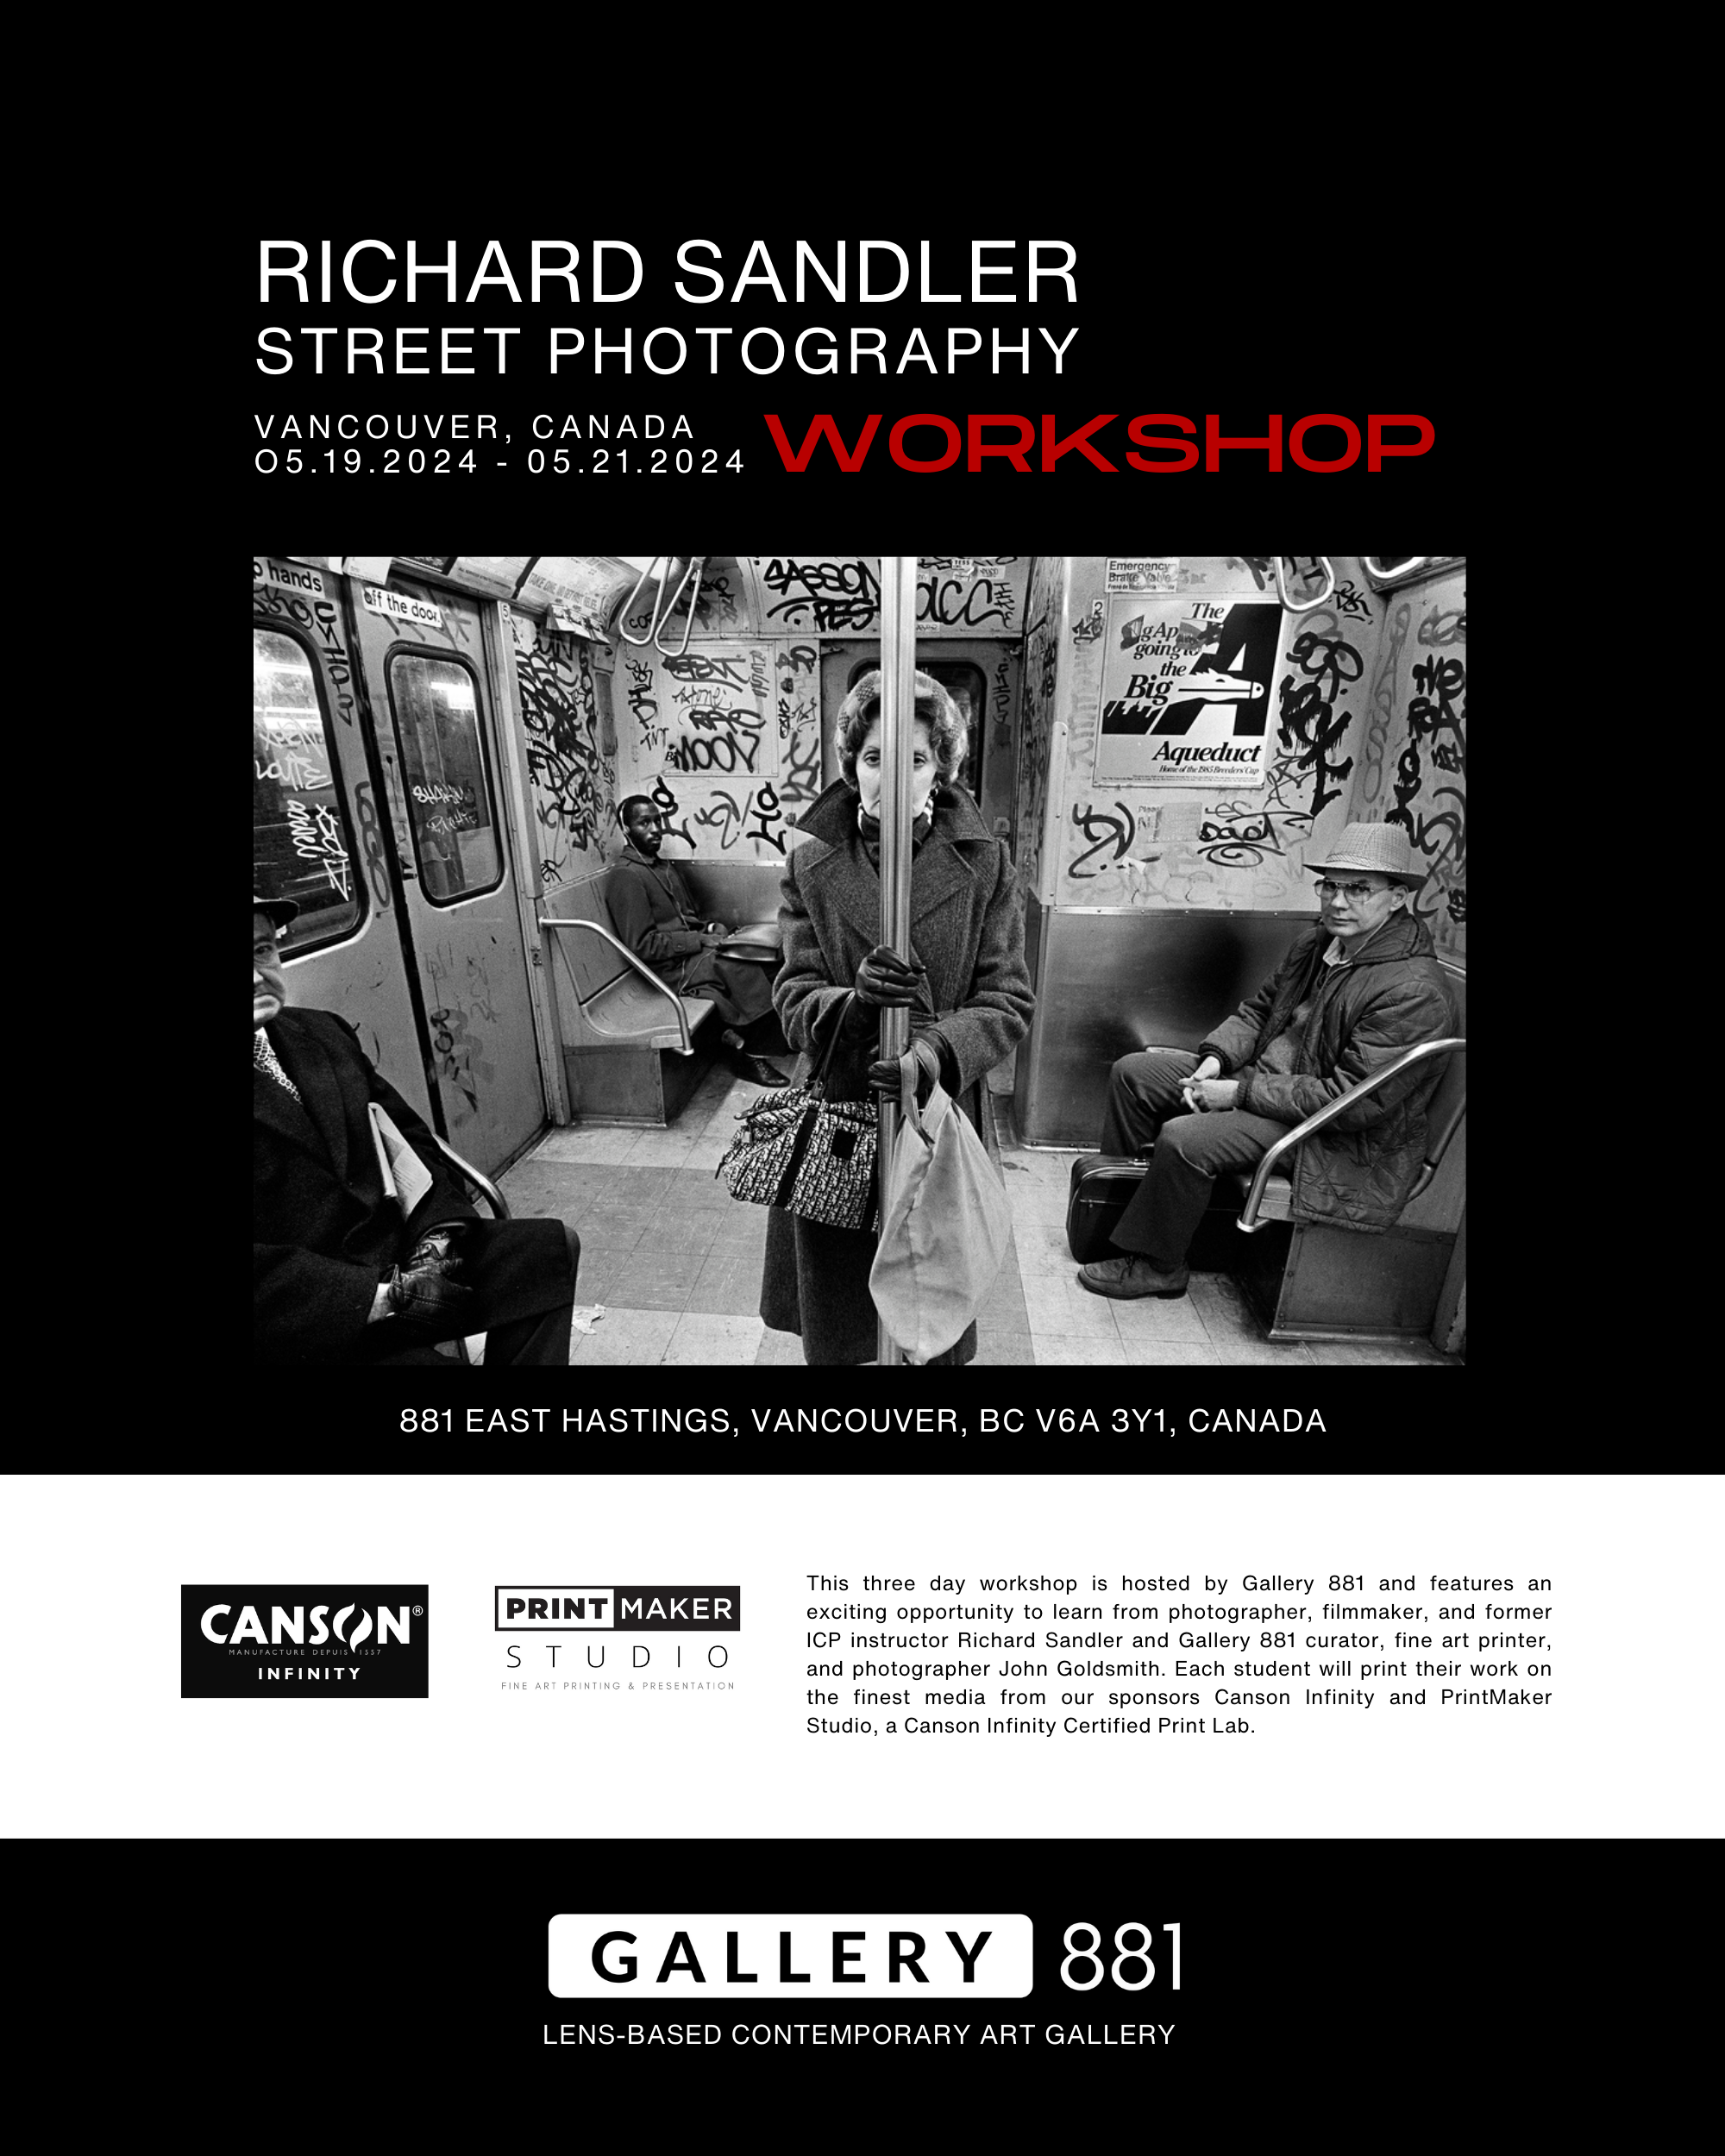 Gallery-881-Richard-Sandler-Workshop-1.png